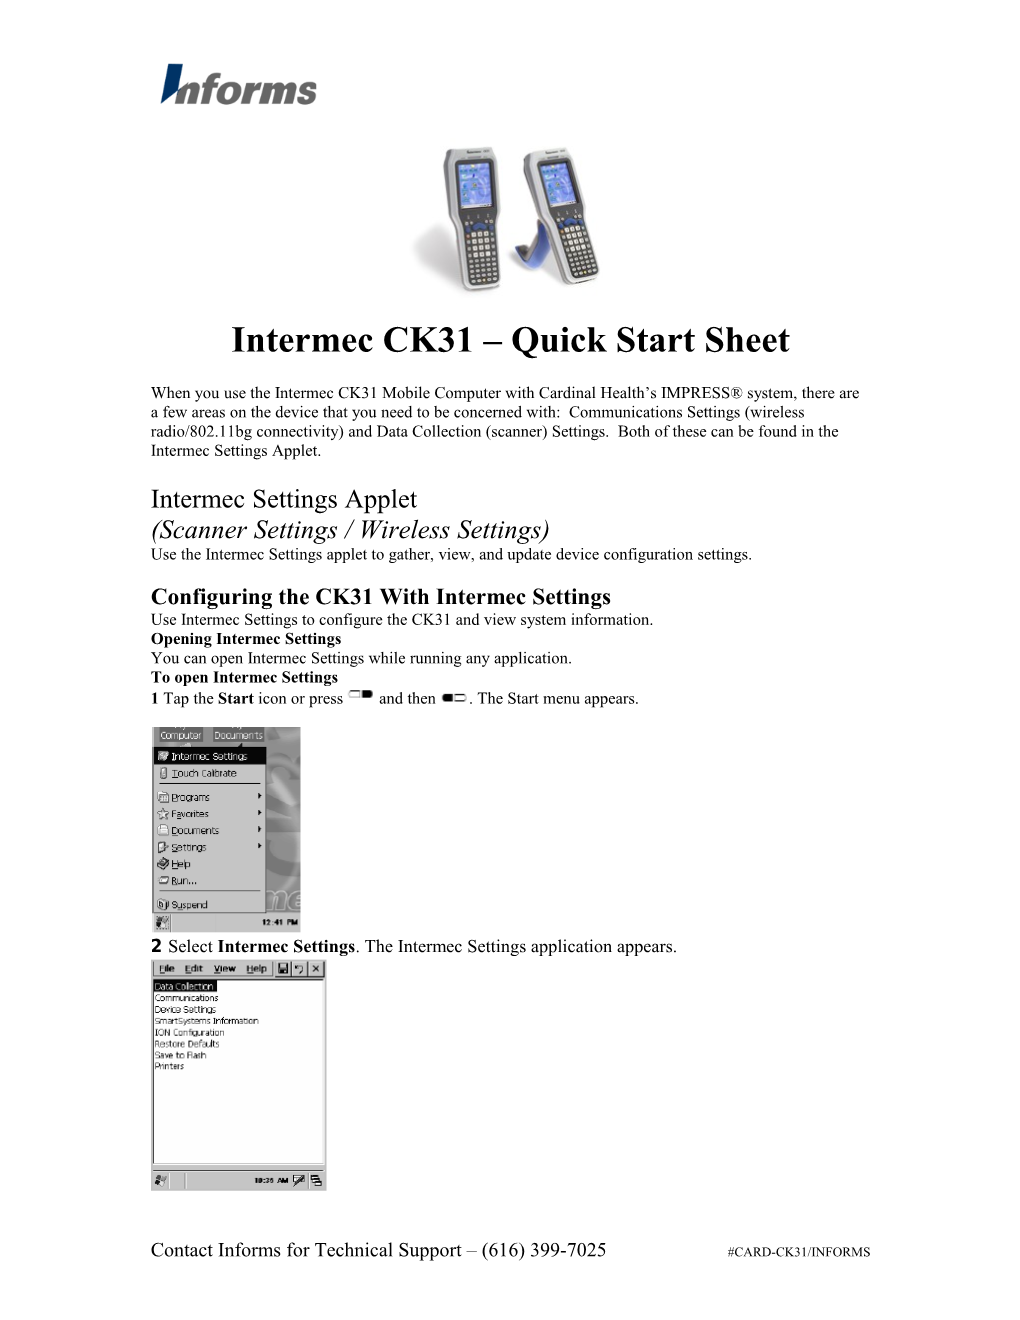 Intermec CK31 Quick Start Sheet